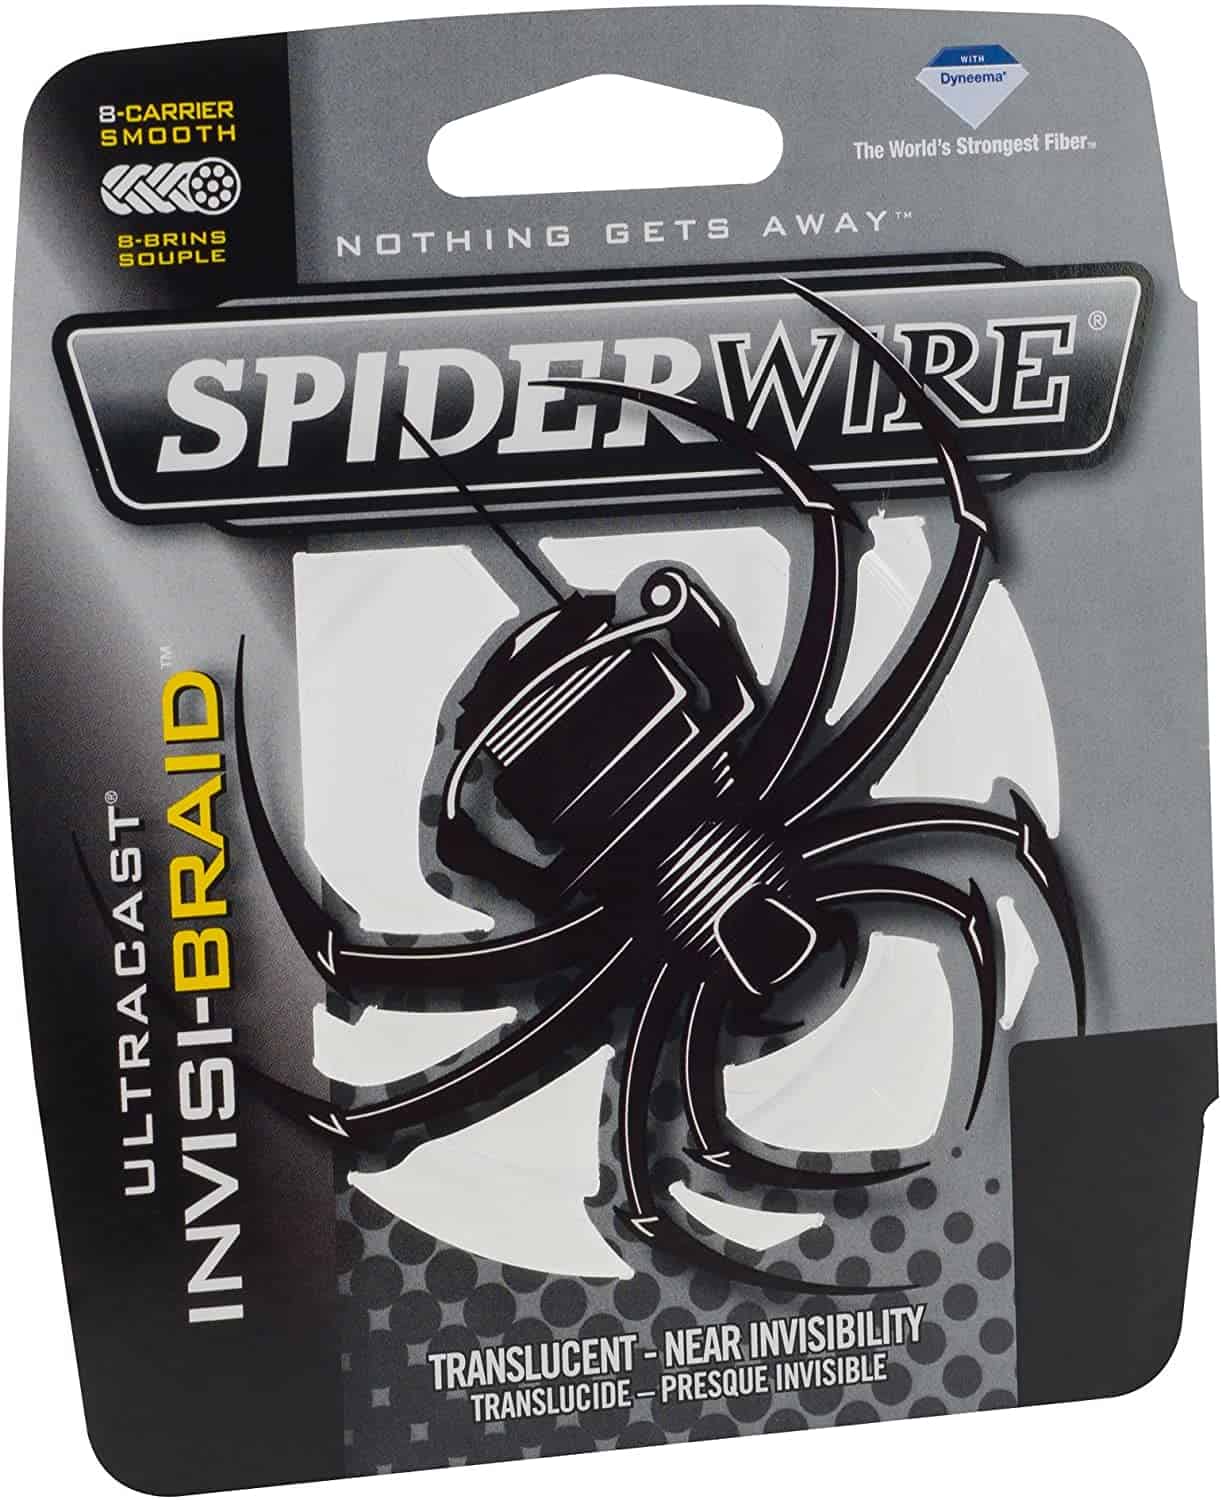 Spider Wire Ultracast Braid line